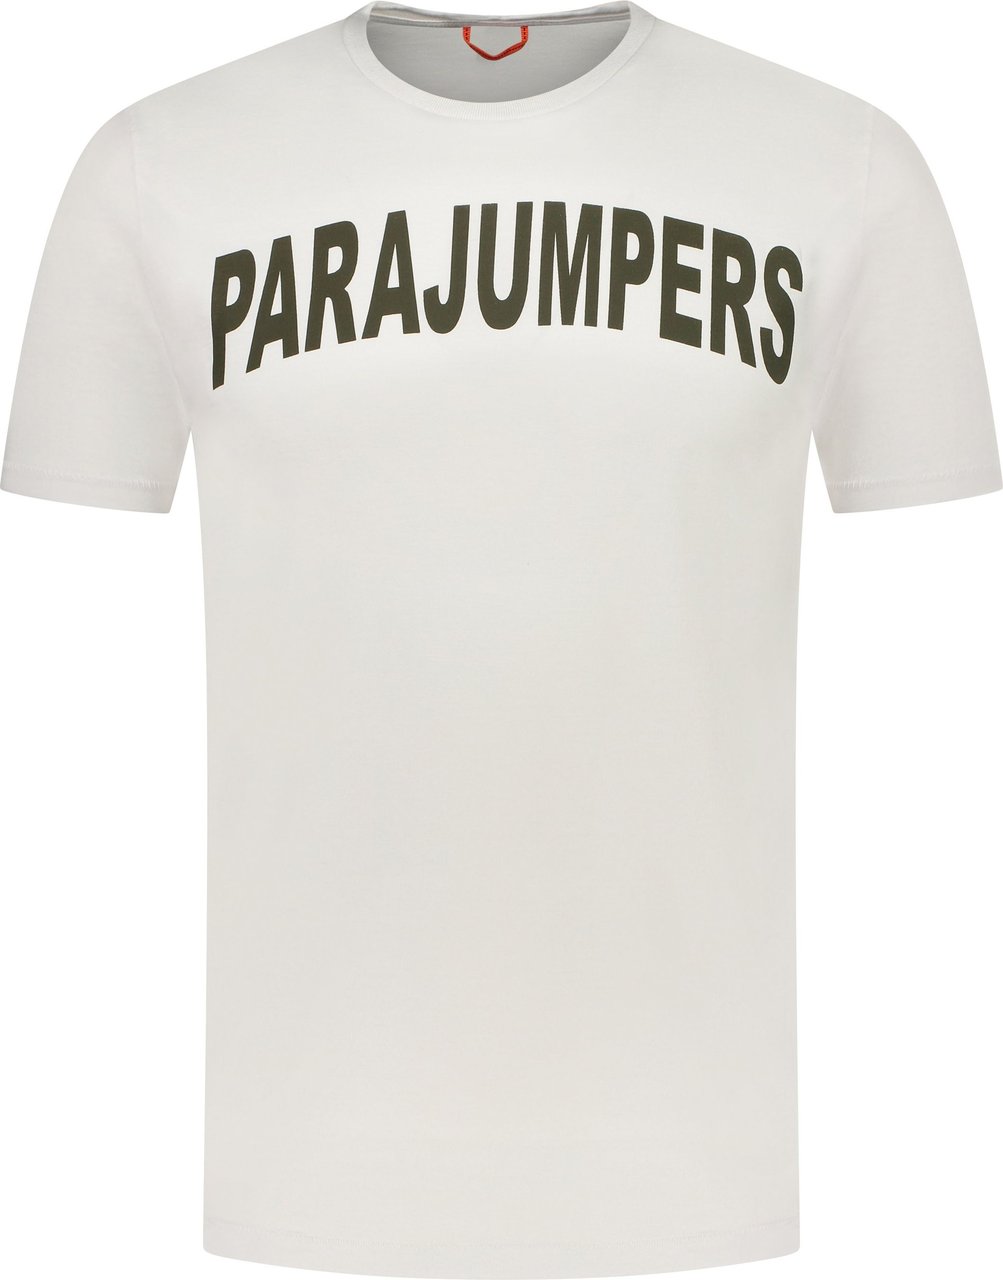 Parajumpers T-shirt Wit Wit